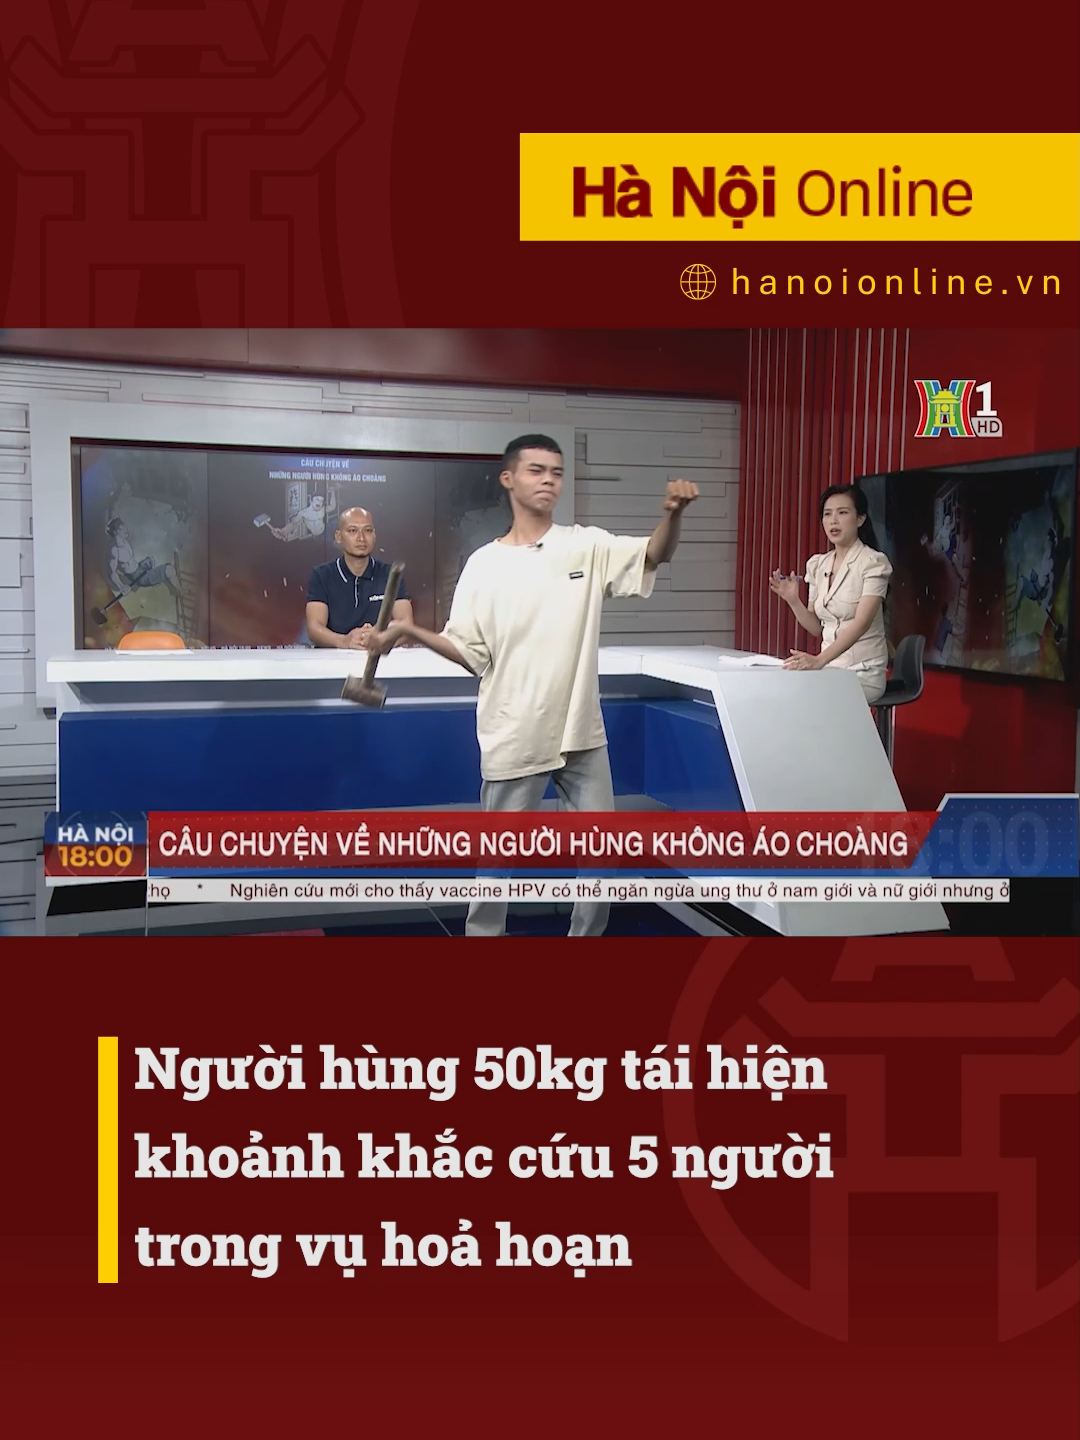 Người hùng 50kg tái hiện khoảnh khắc cứu 5 người trong vụ hoả hoạn #htvdaihanoi #tiktoknews #socialnews #tintuc #tinnong #chay #chaytrungkinh #hanoi #dangvantuan